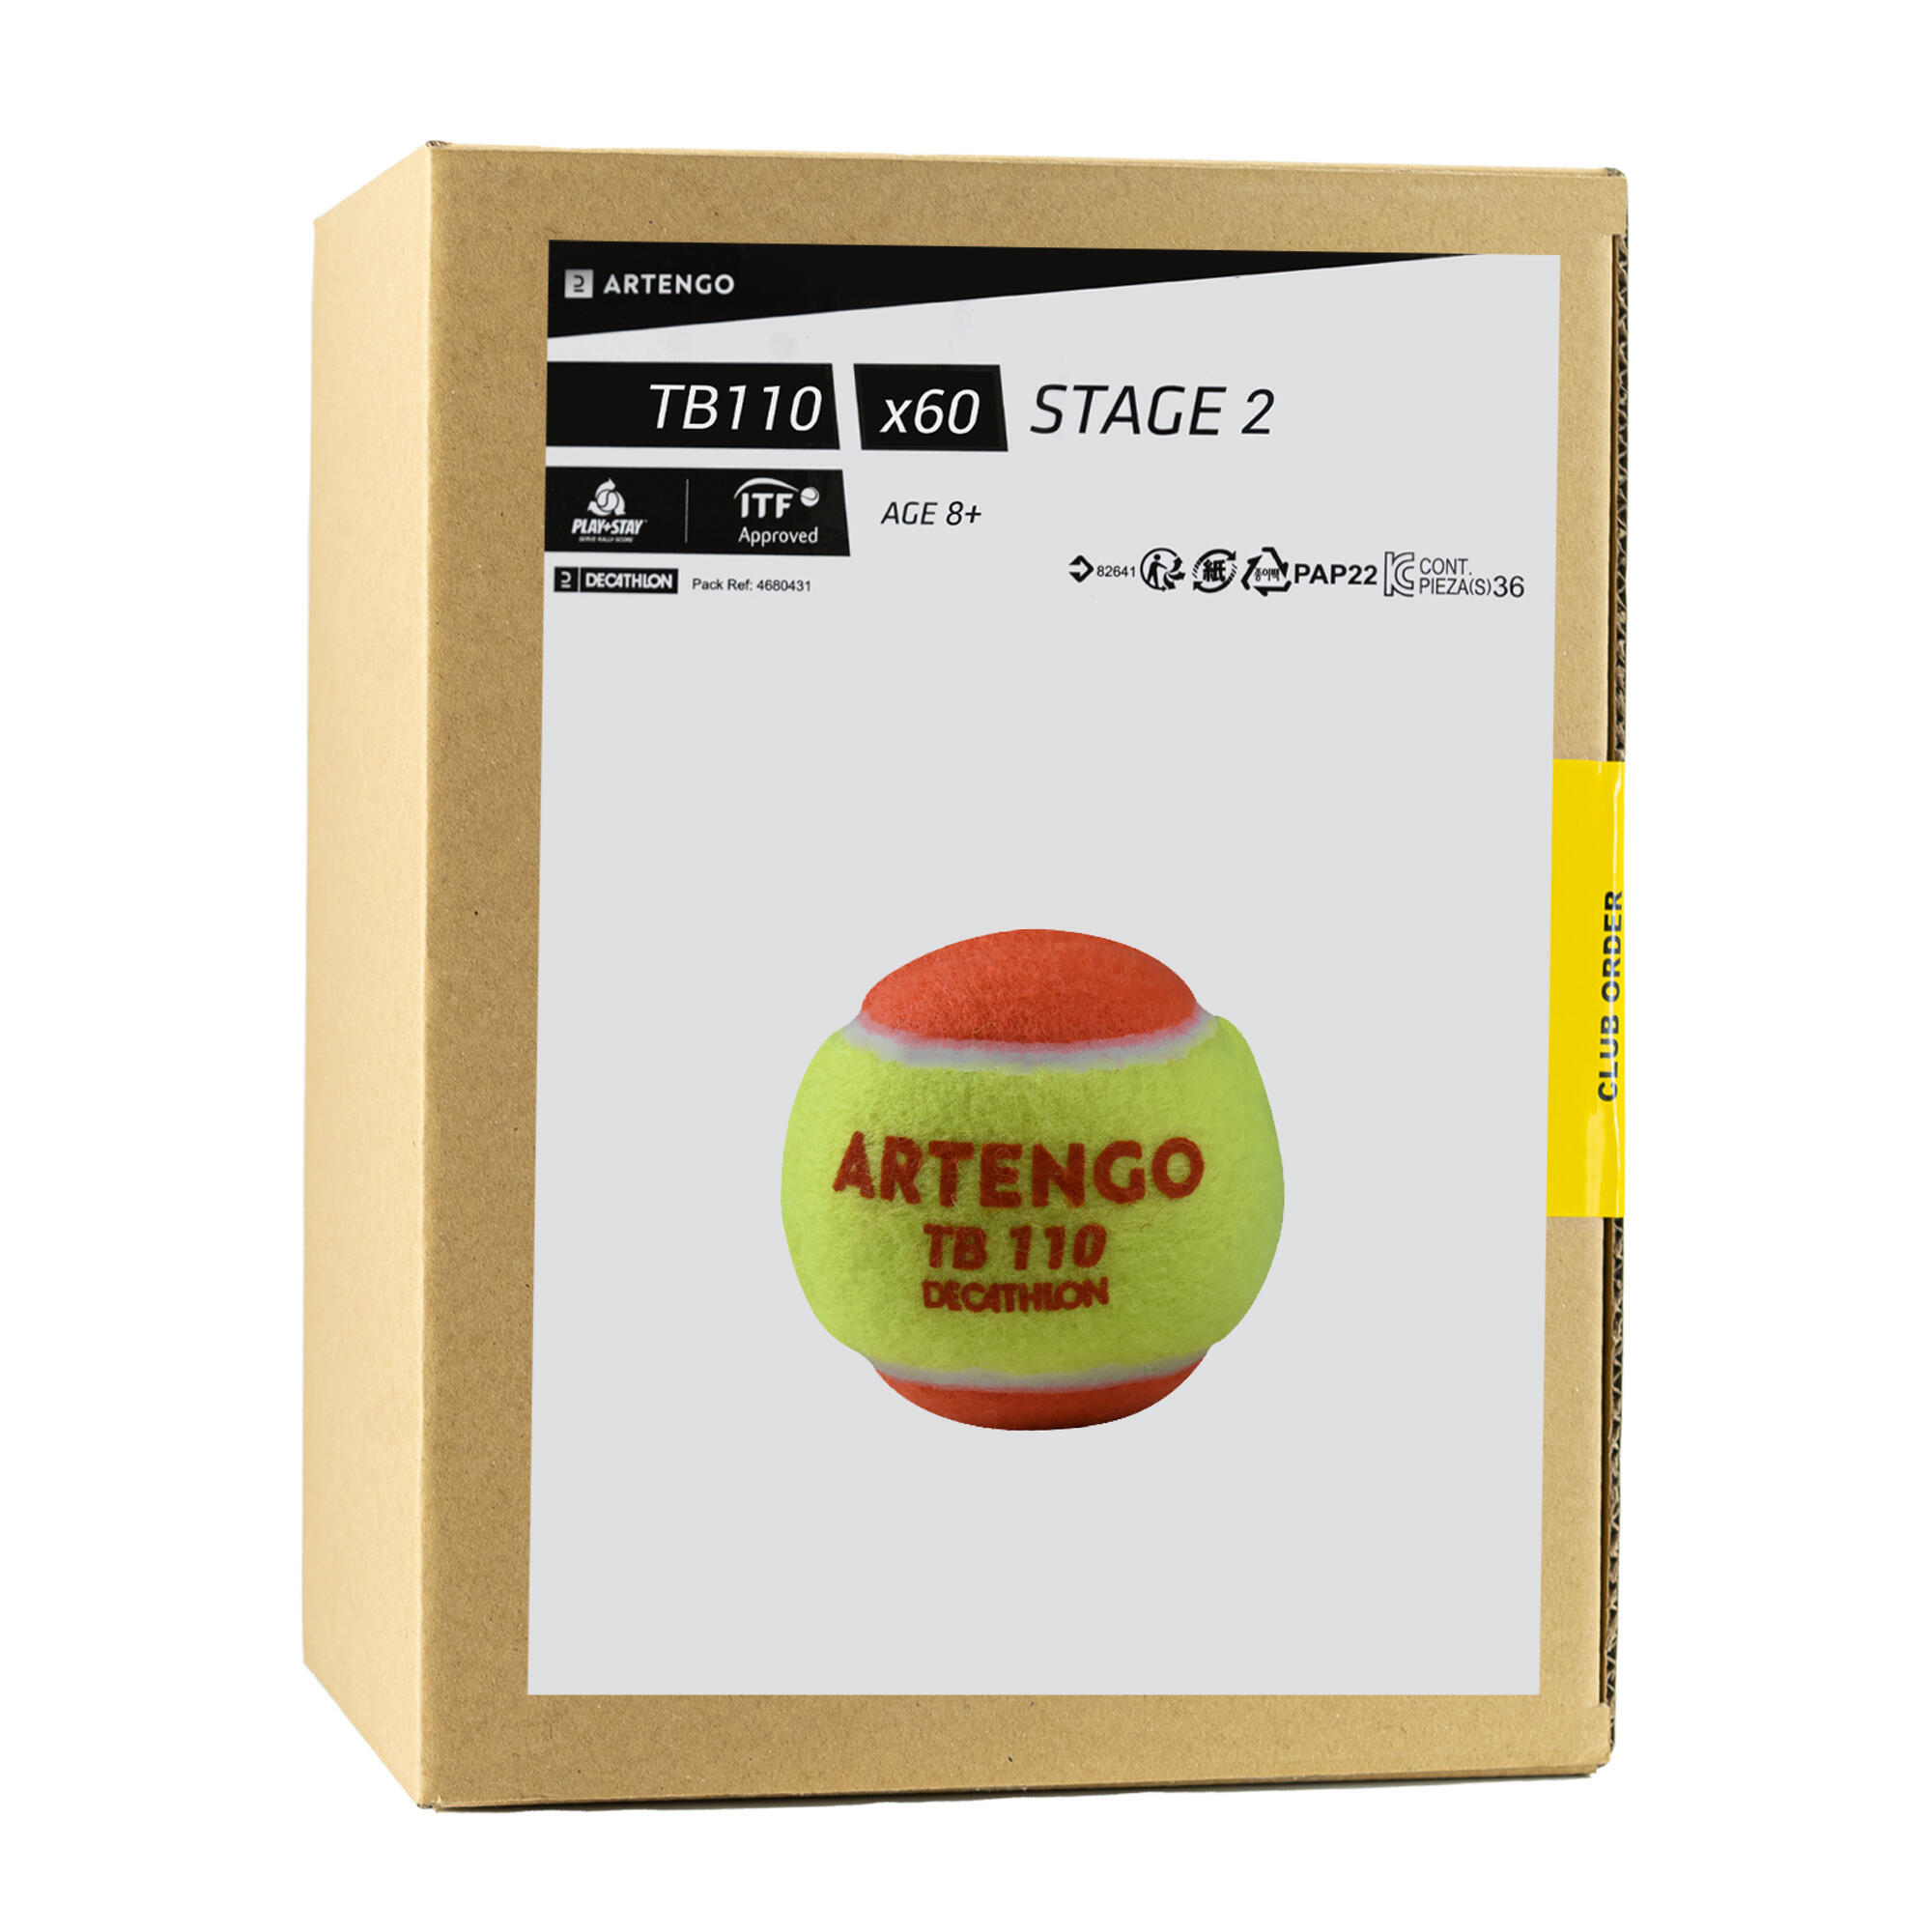 Теннисные мячи - TB110*60 ARTENGO теннисные мячи balls unlimited red x3